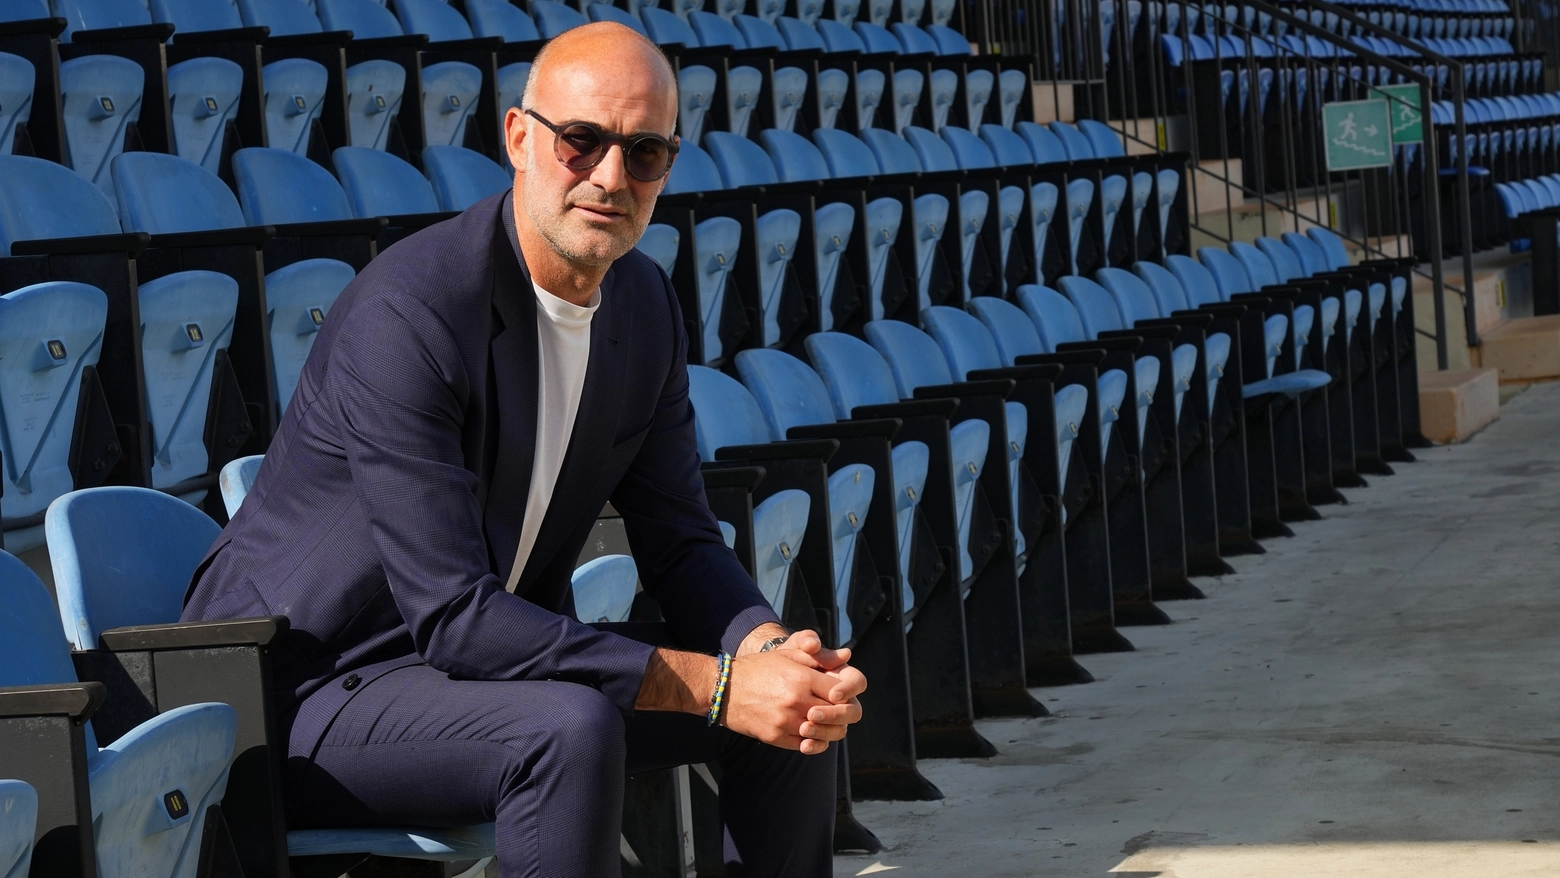 Davide Vaira, ex giocatore e direttore sportivo, passa da Football Manager alla poltrona del Pisa. Con esperienza a Modena, ora punta ai playoff con il club nerazzurro.